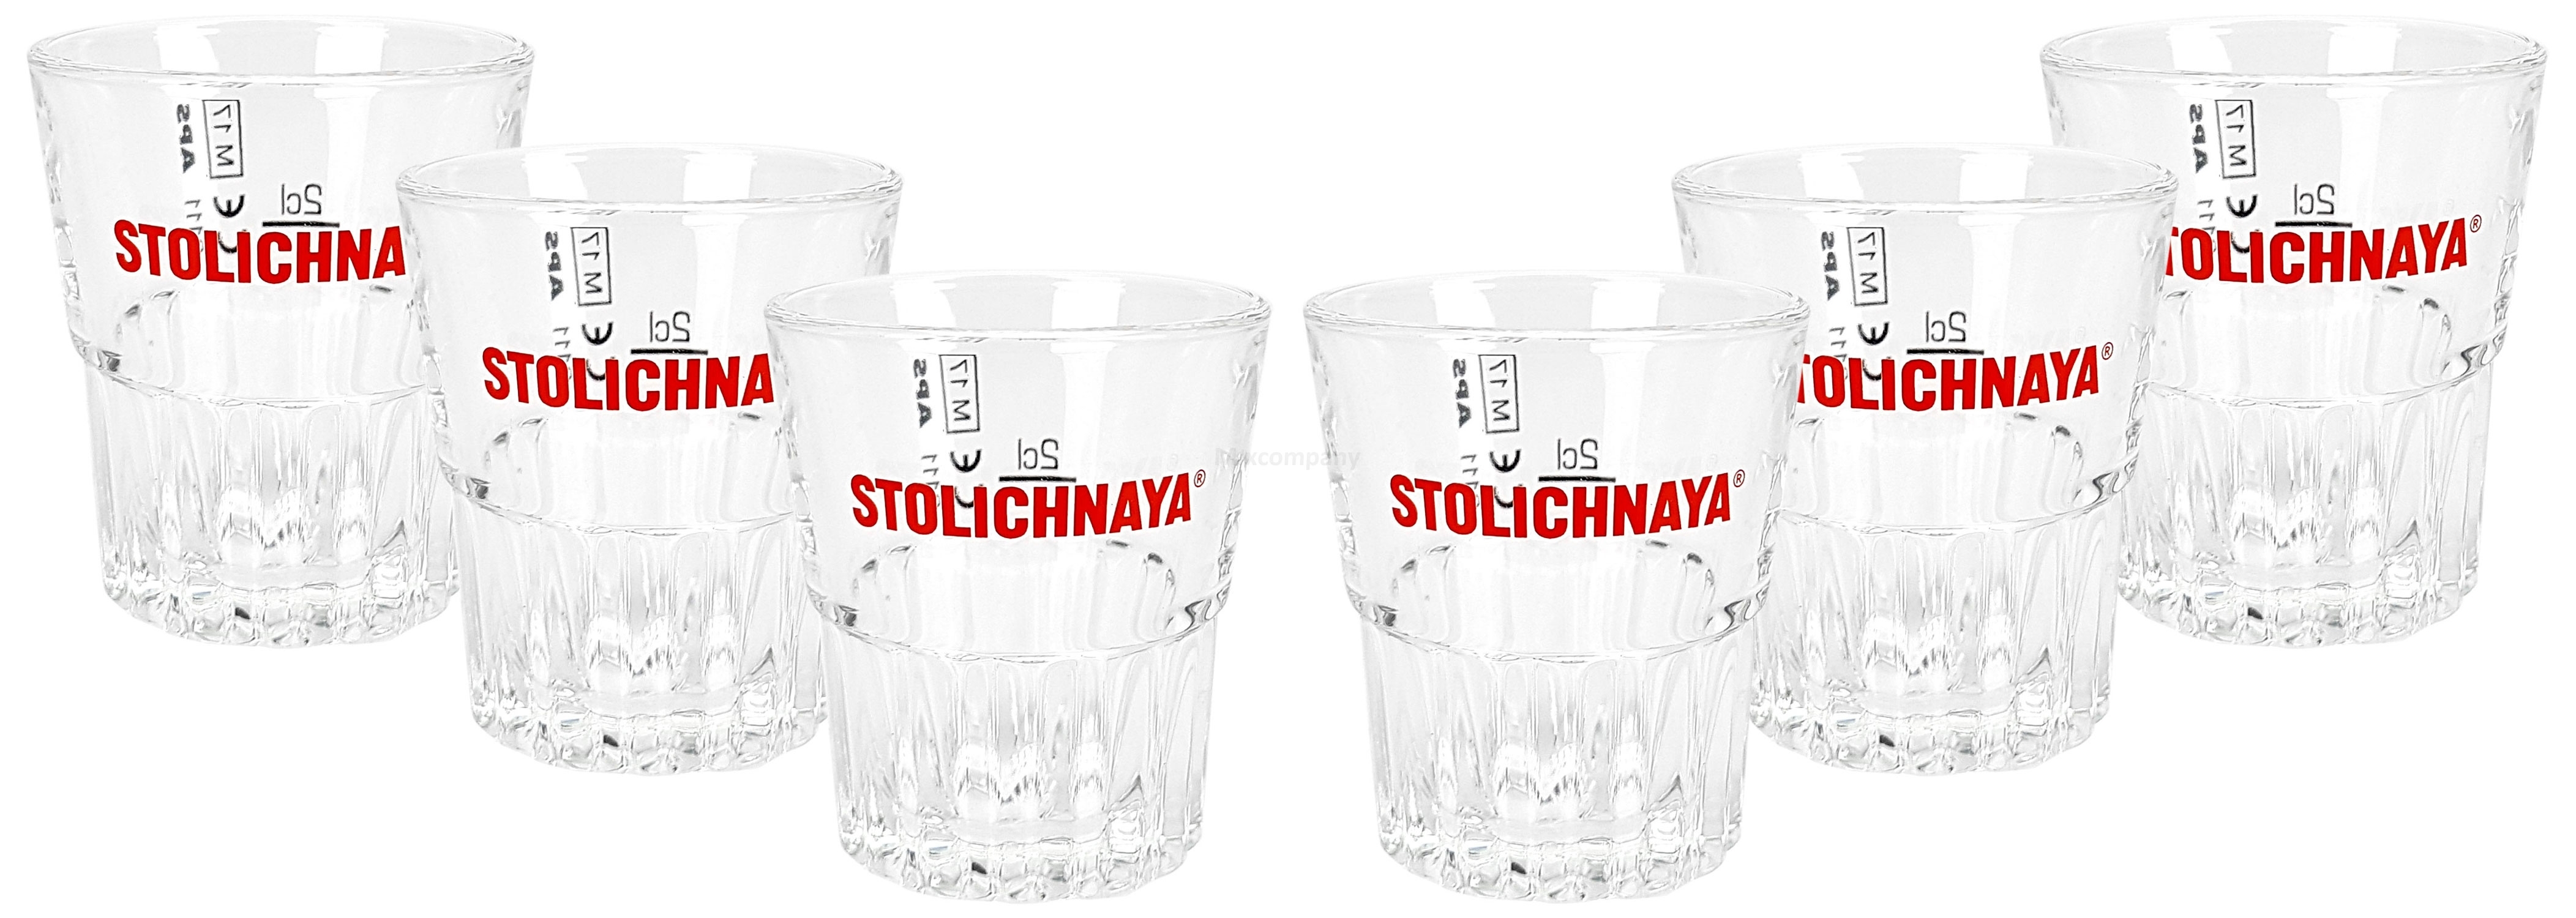 Stolichnaya Shotglas Glas Gläser Set - 6x Shotgläser 2cl geeicht